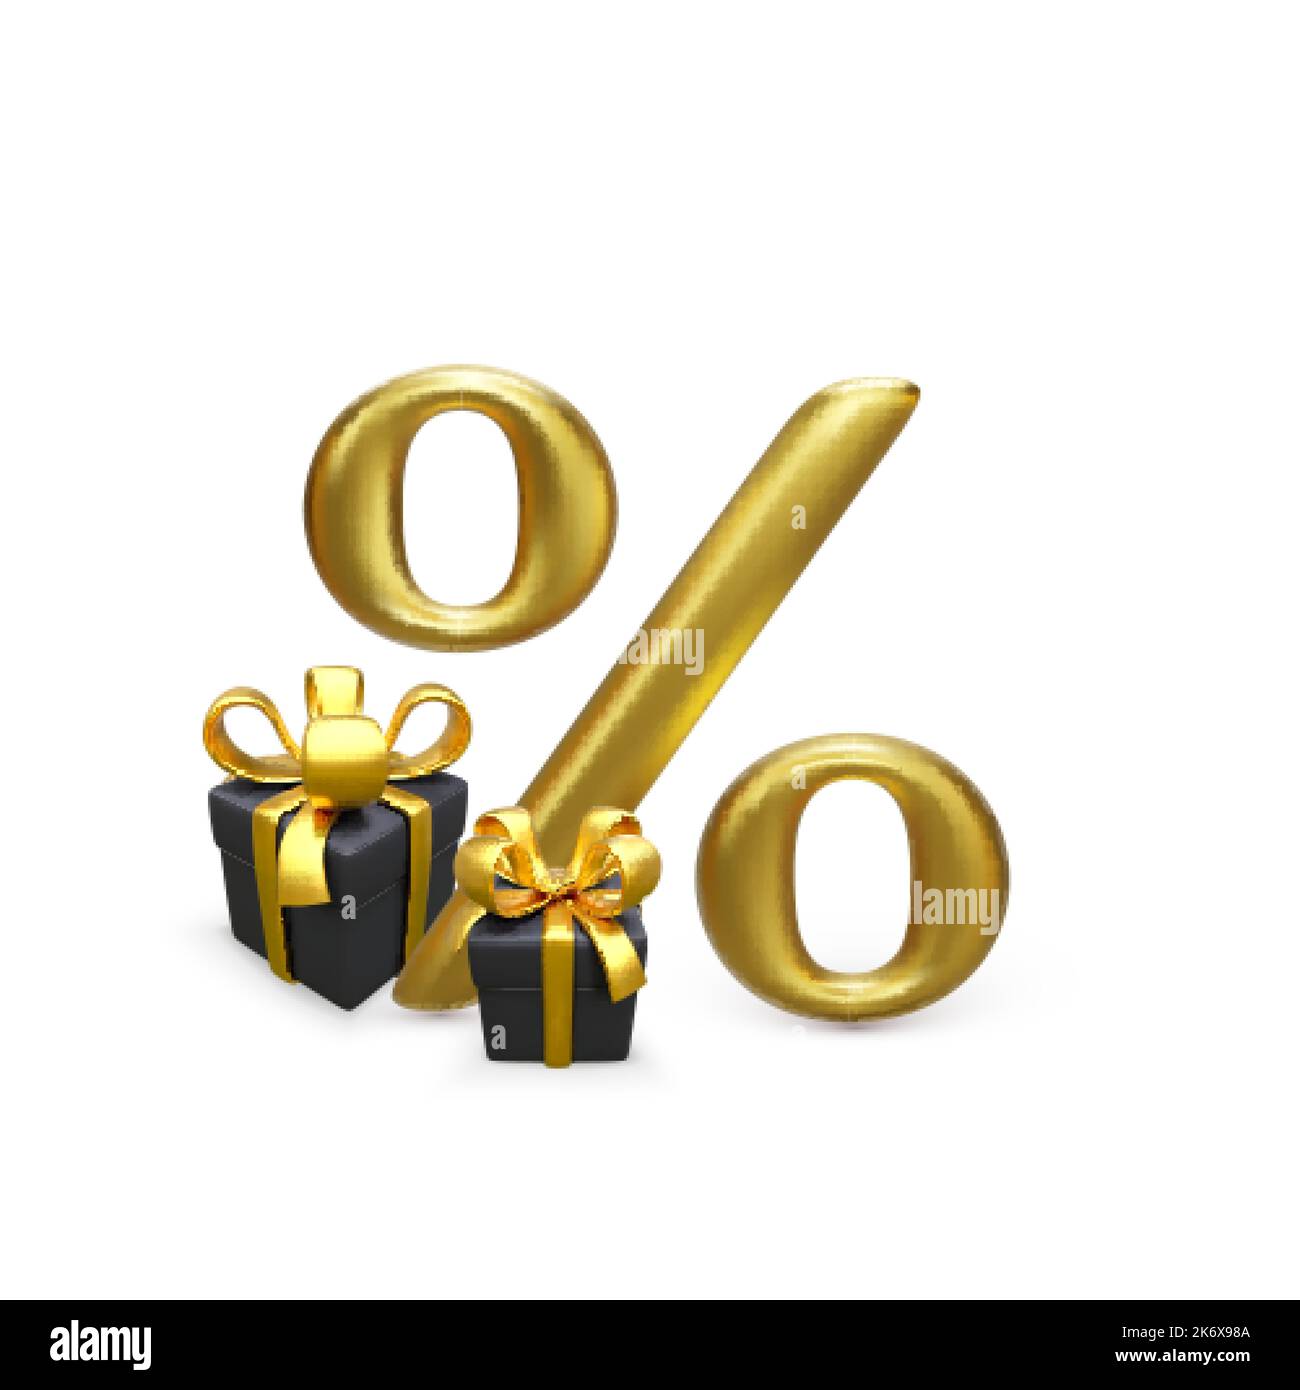 Goldenes Prozent-Symbol mit schwarzer Geschenkbox mit goldener Schleife. Sonderangebot oder Rabatt-Design-Element für Banner und Poster. Vektorgrafik Stock Vektor